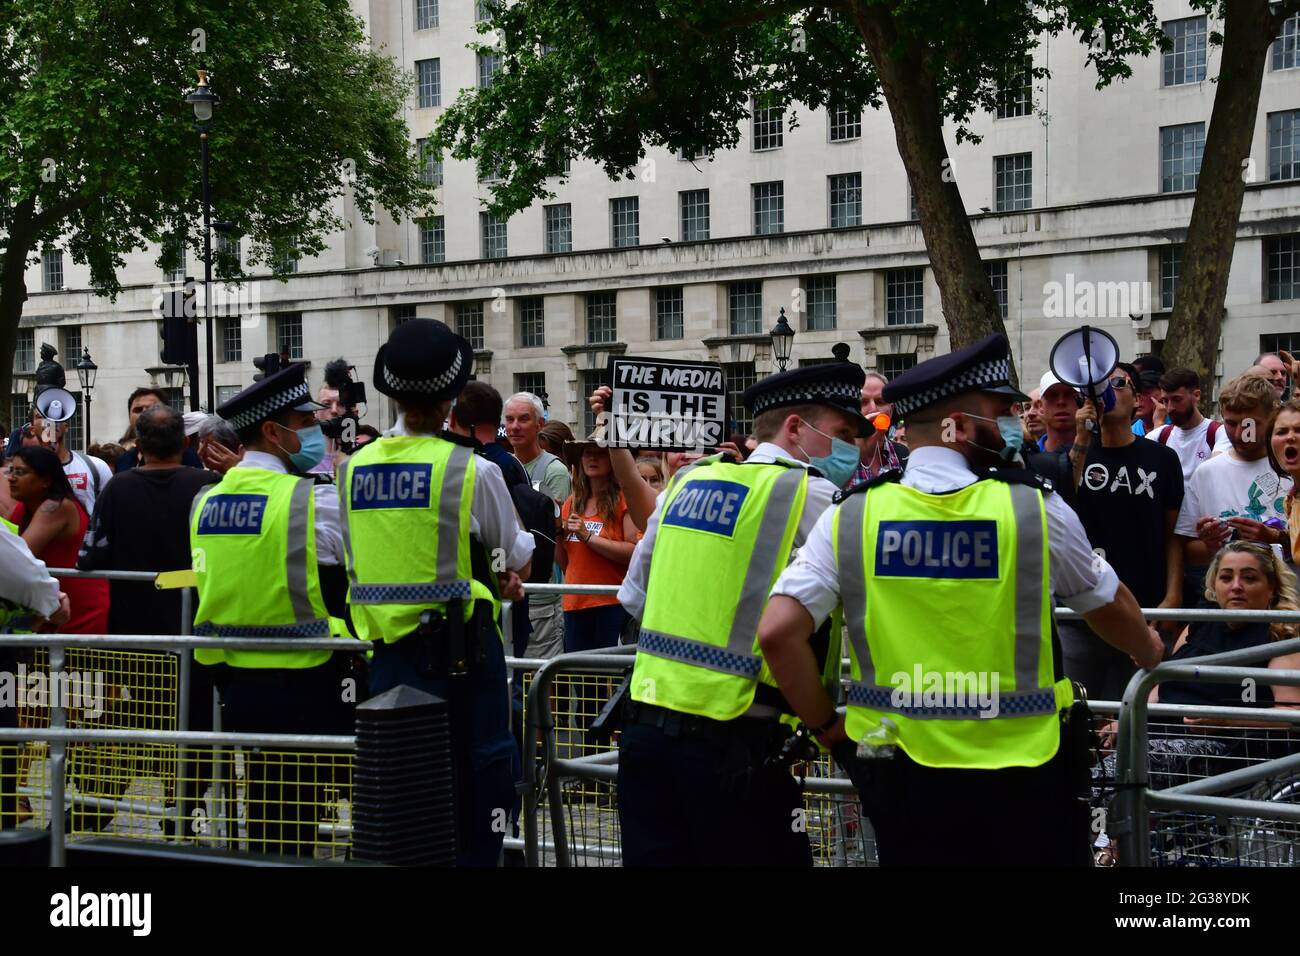 Londres, Reino Unido. 14th de junio de 2021. Manifestantes de boca alta jurando a la policía en el frente de 10 Downing Street el 14th de junio de 2021, Londres, Reino Unido. Crédito: Picture Capital/Alamy Live News Foto de stock